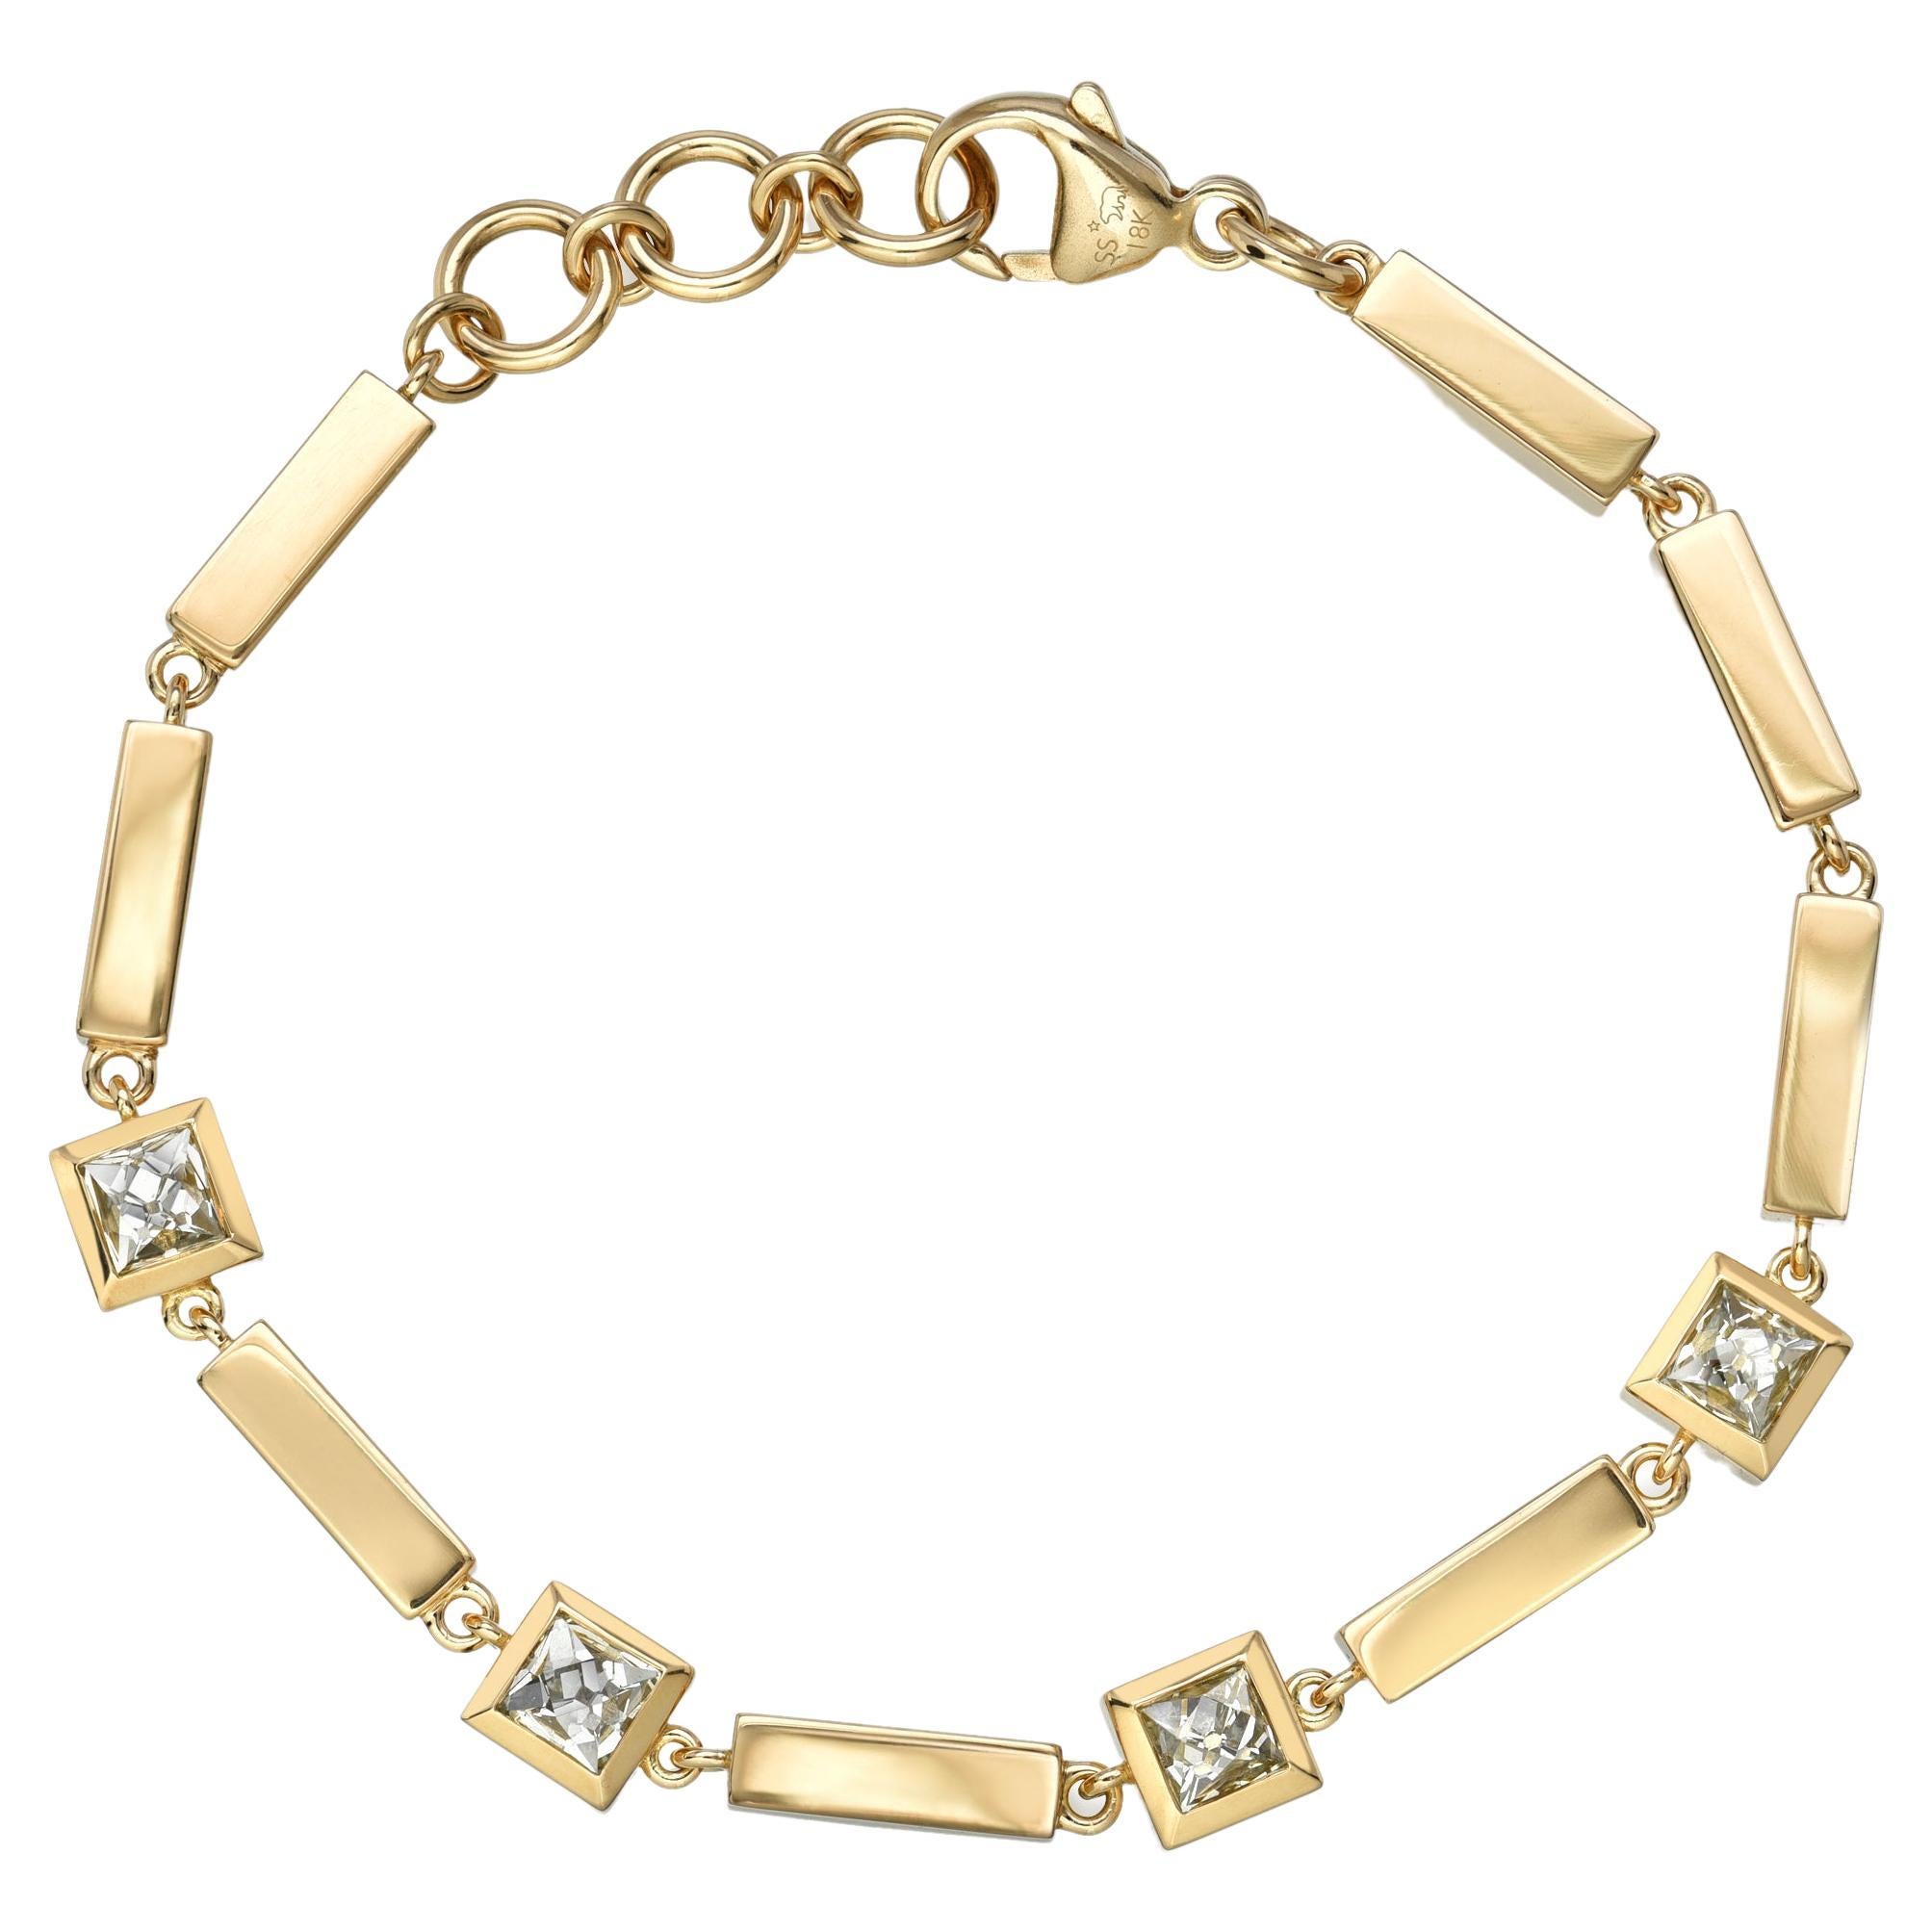 Designs Of Gold Bracelets For Girls